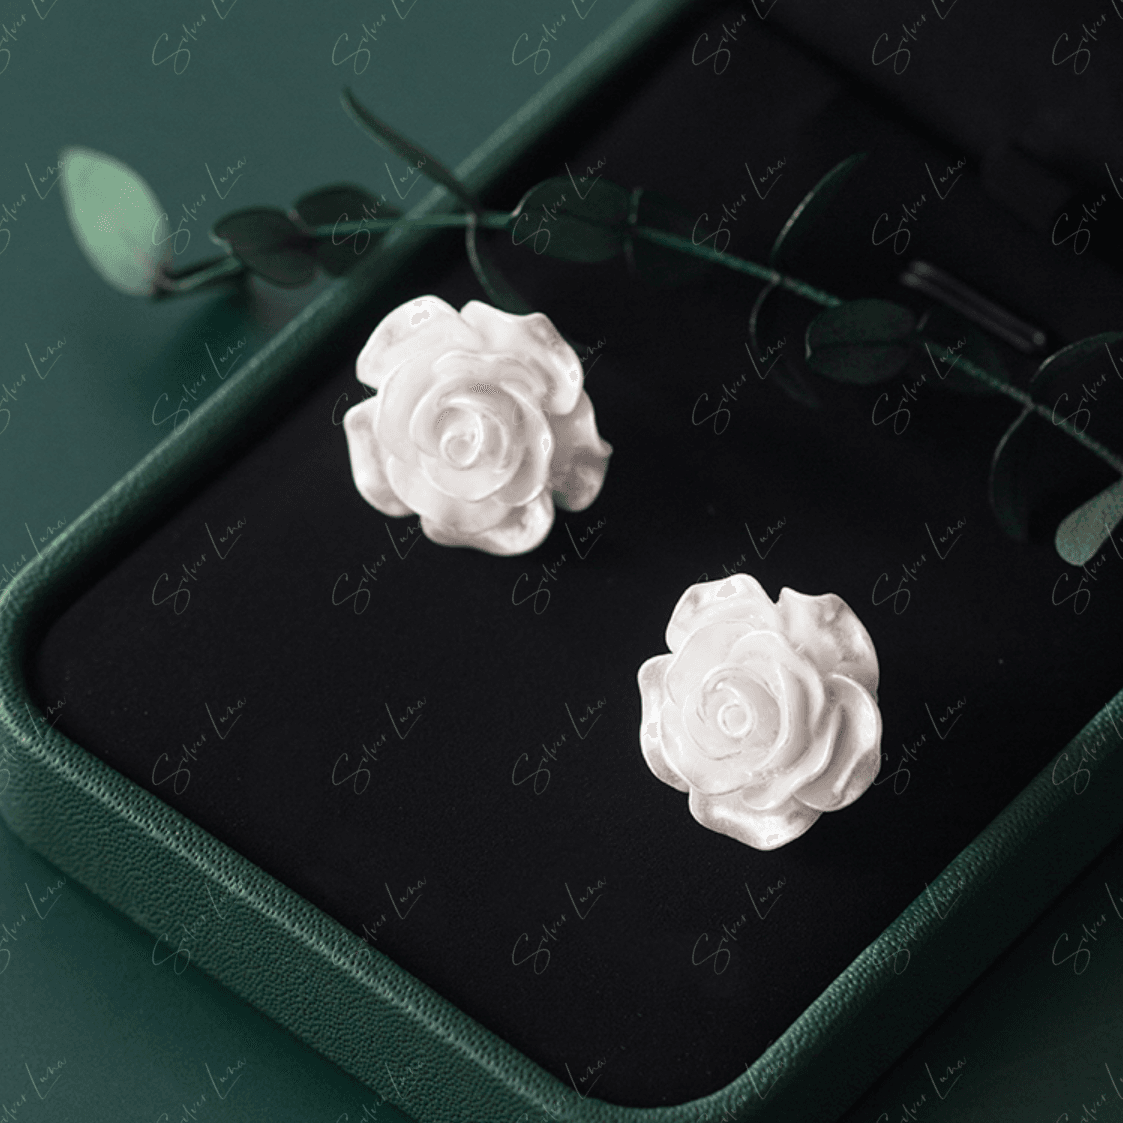 white rose flower stud earrings